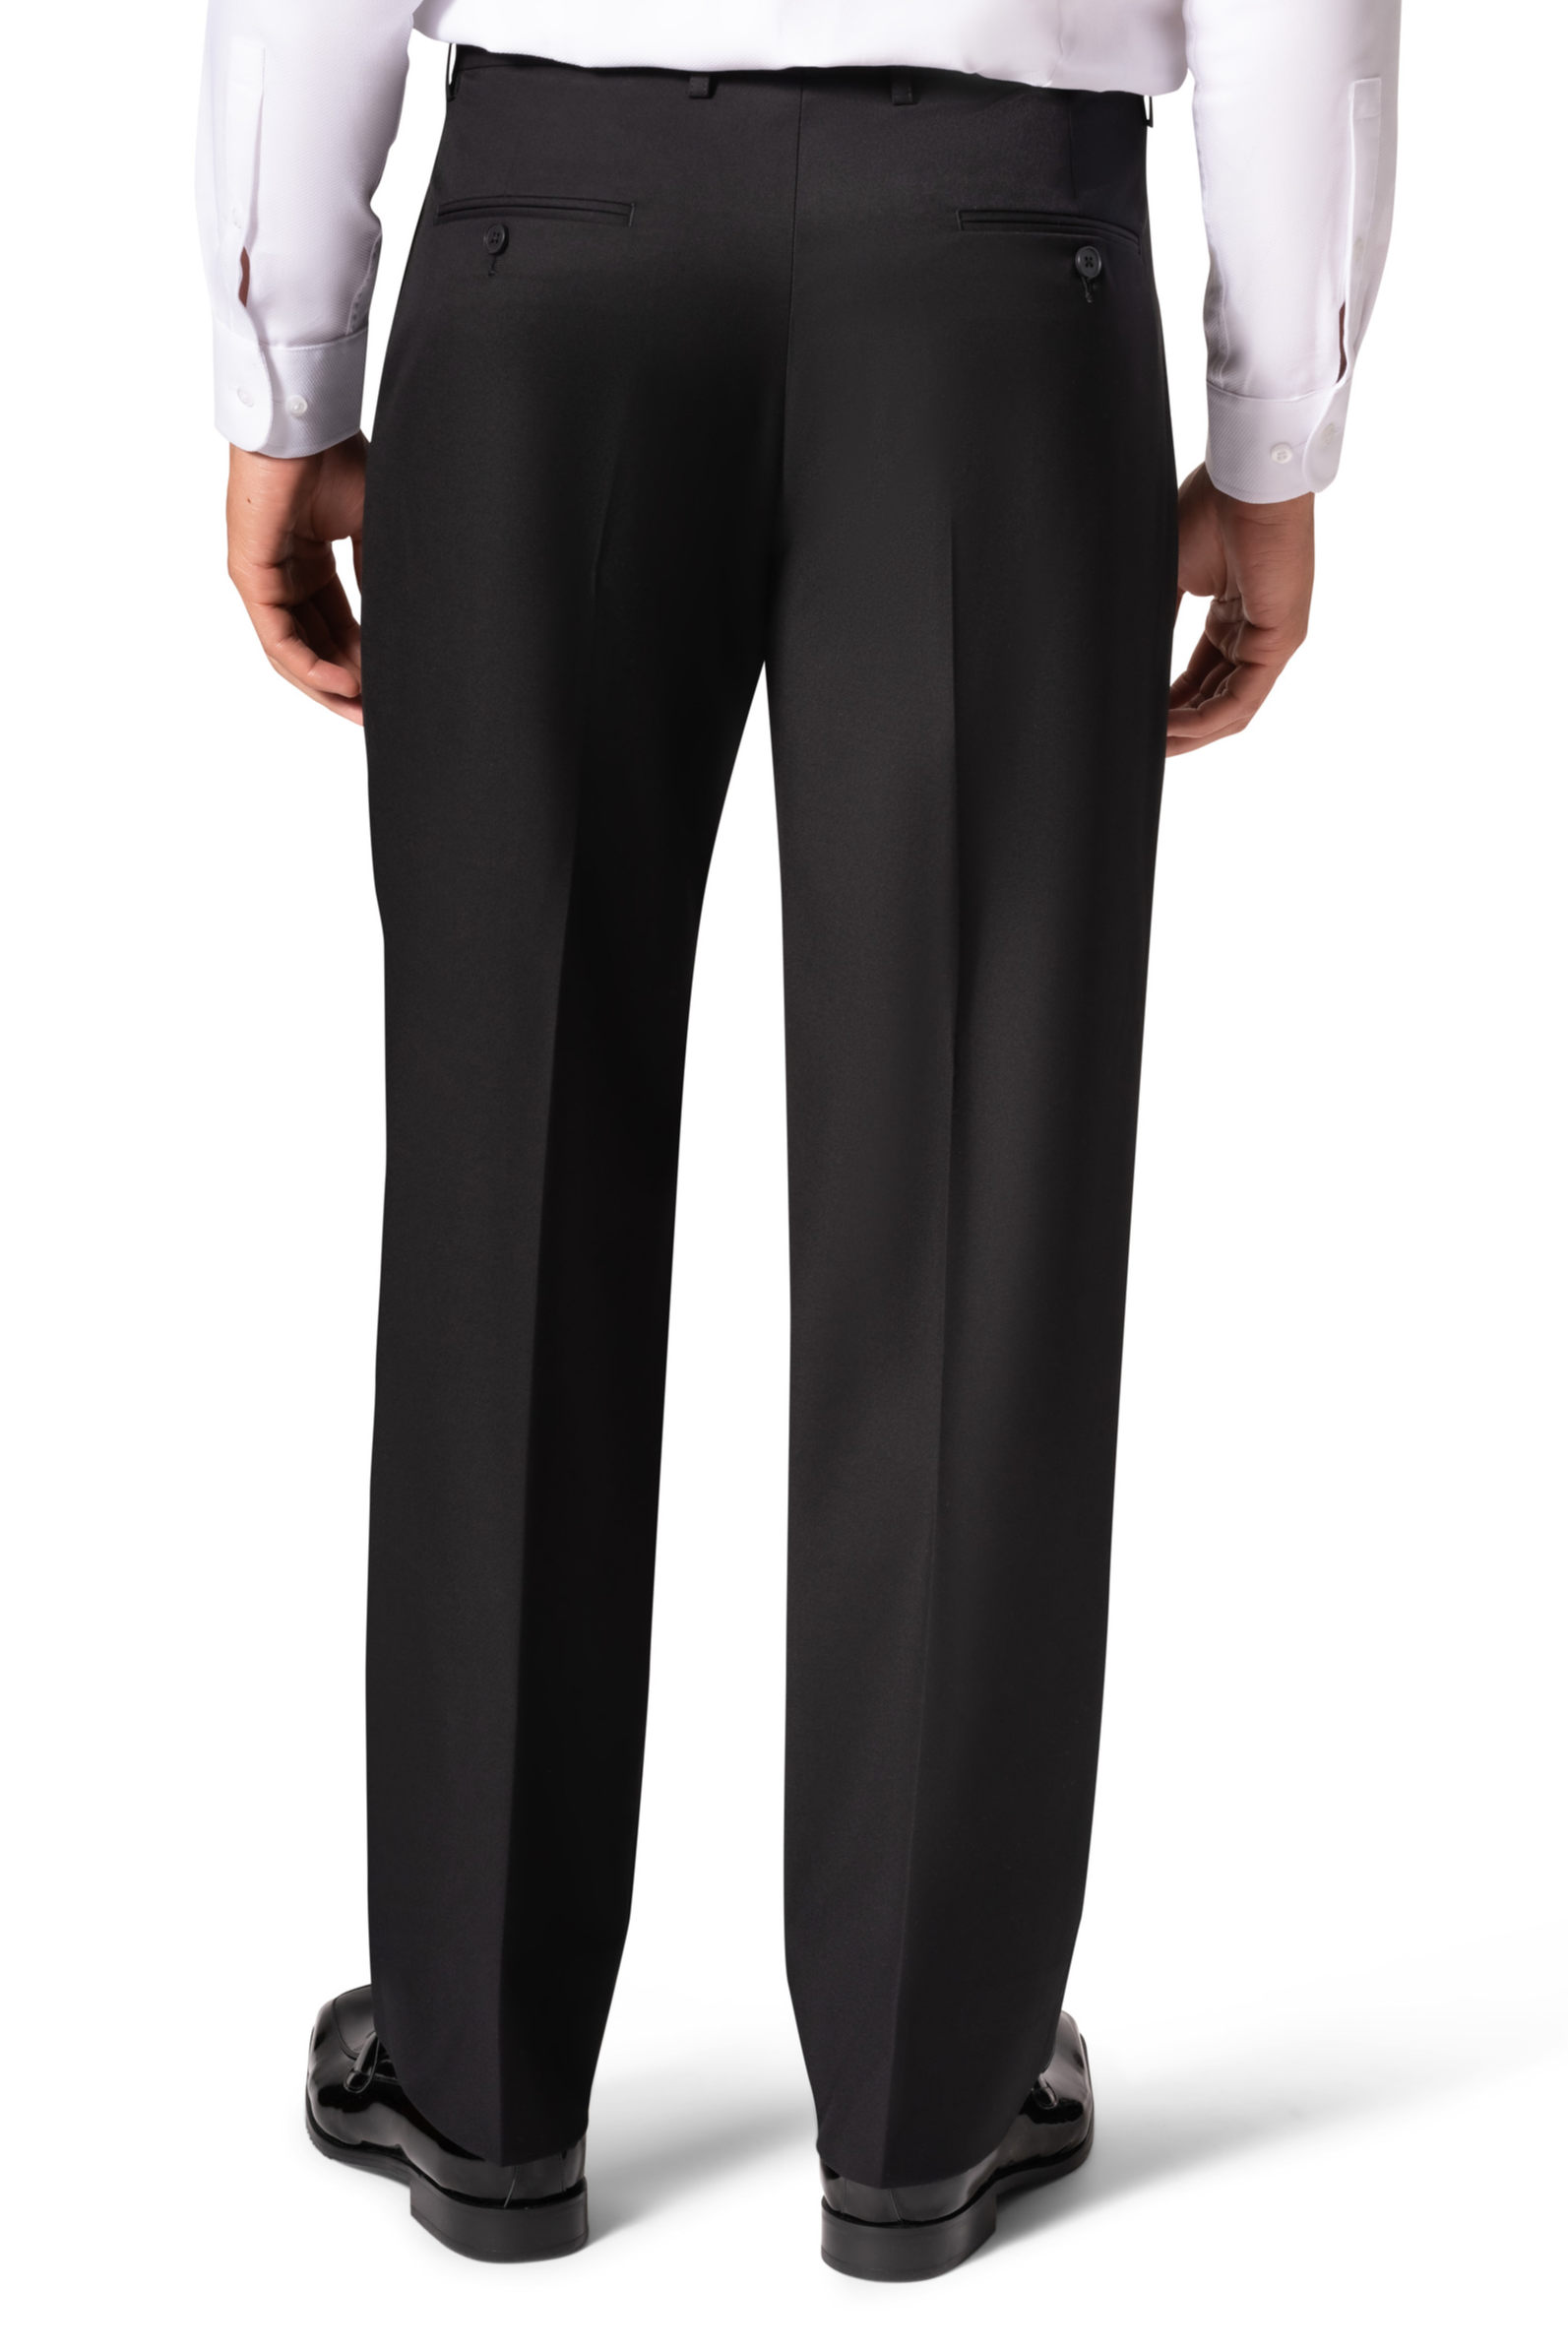 Berragamo A6732 D/B Slim Fit Suit - Black